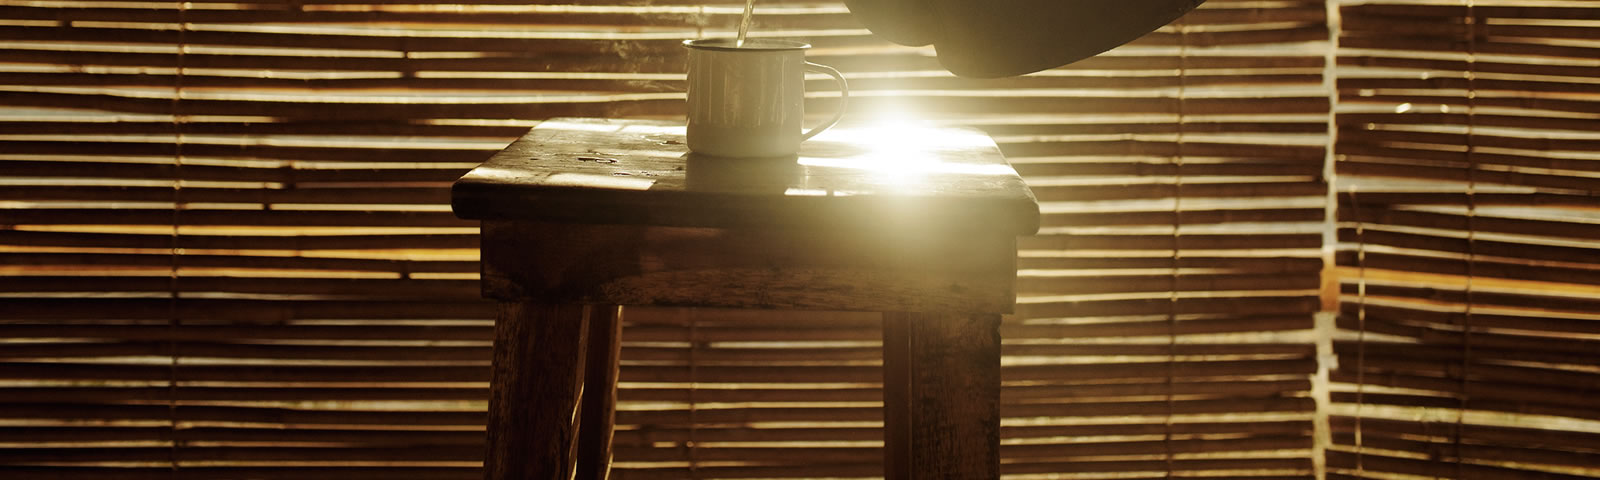 Sonne und Holz - das Licht lässt schöne Möbel erblühen